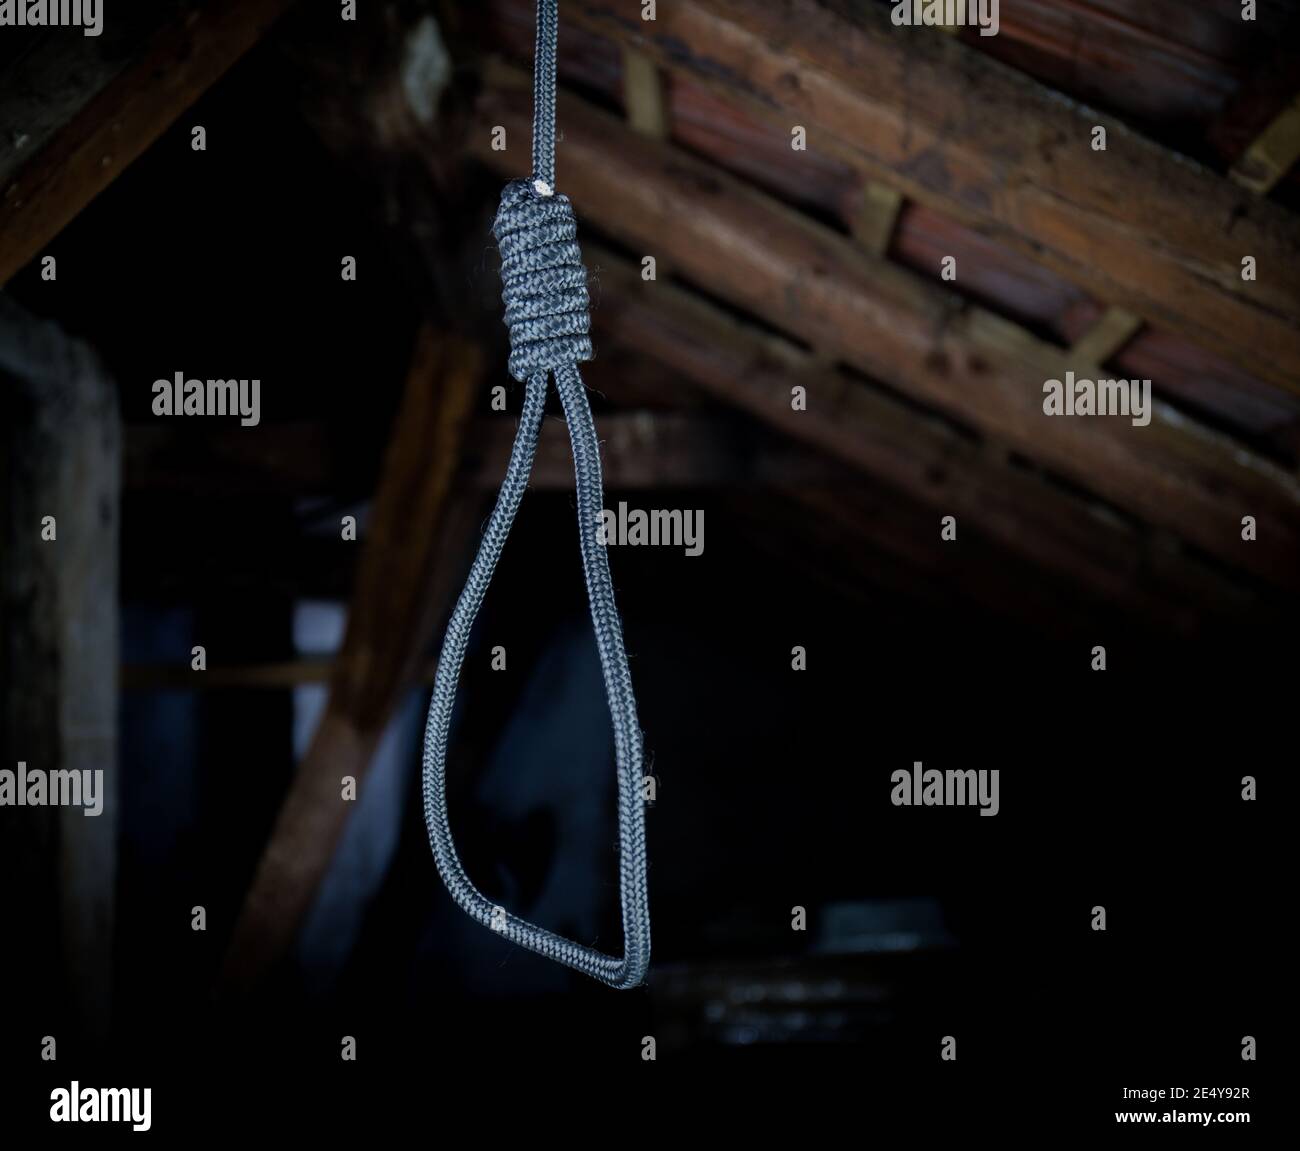 Un cappio appeso intorno al collo, un suicidio commesso, scene orribili in un soffitta oscura Foto Stock